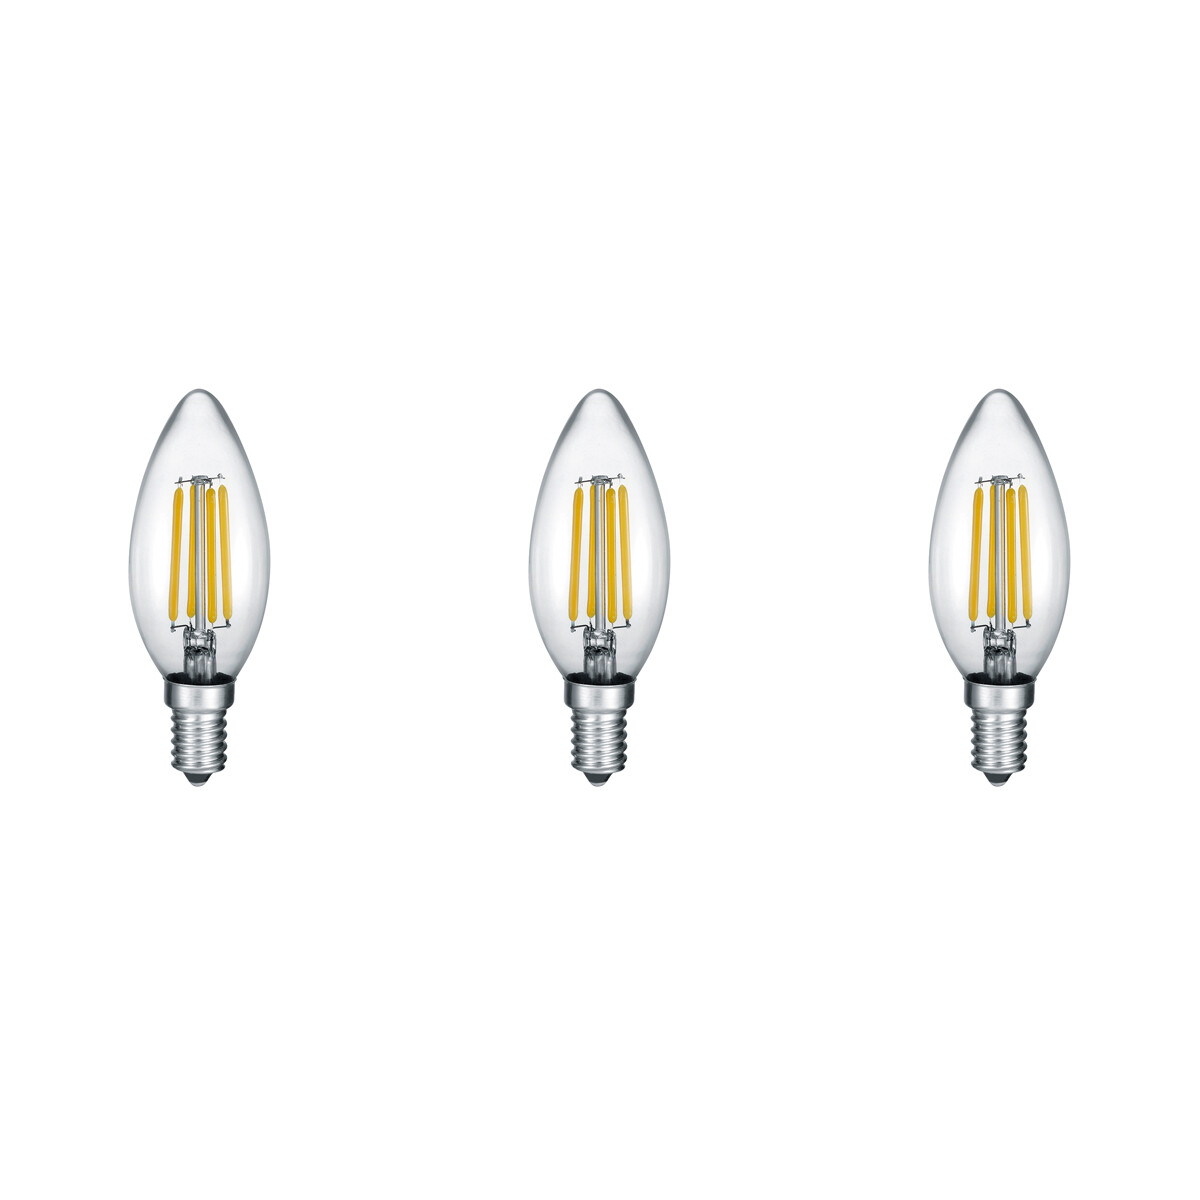 LED Lamp - Filament - Trion Kamino - Set 3 Stuks - E14 Fitting - 2W - Warm Wit-2700K - Transparant H